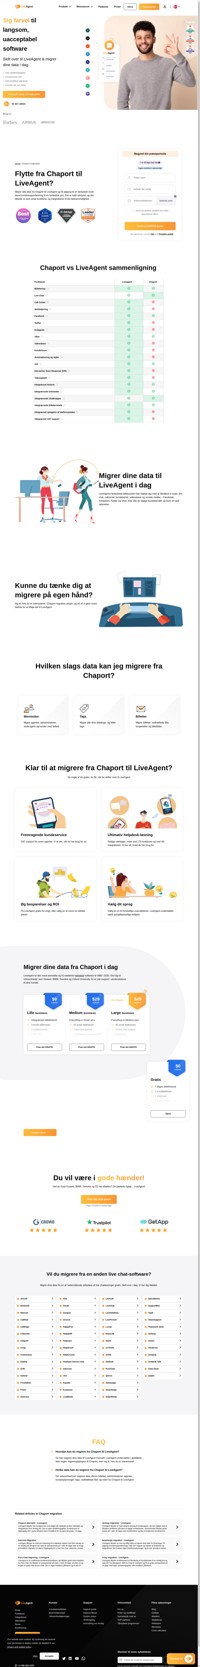 LiveAgent er en helpdesk-løsning, der forbinder flere kanaler i én grænseflade. Migrer fra Chaport til LiveAgent og begynd at få forretningsfordele.